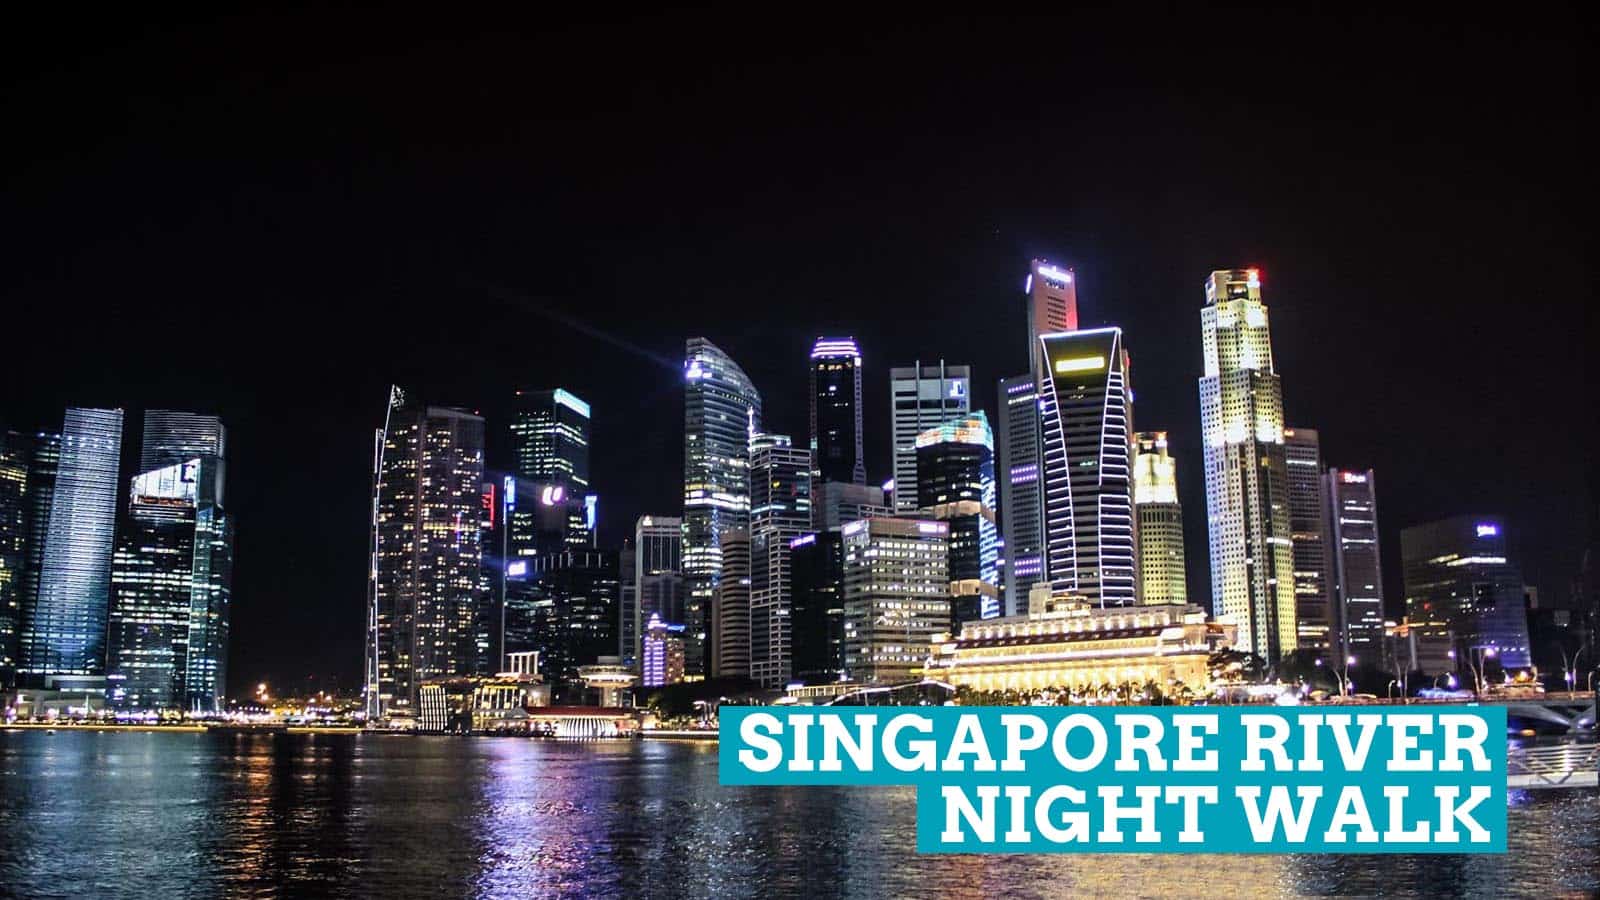 新加坡河夜行:中国新年的余晖